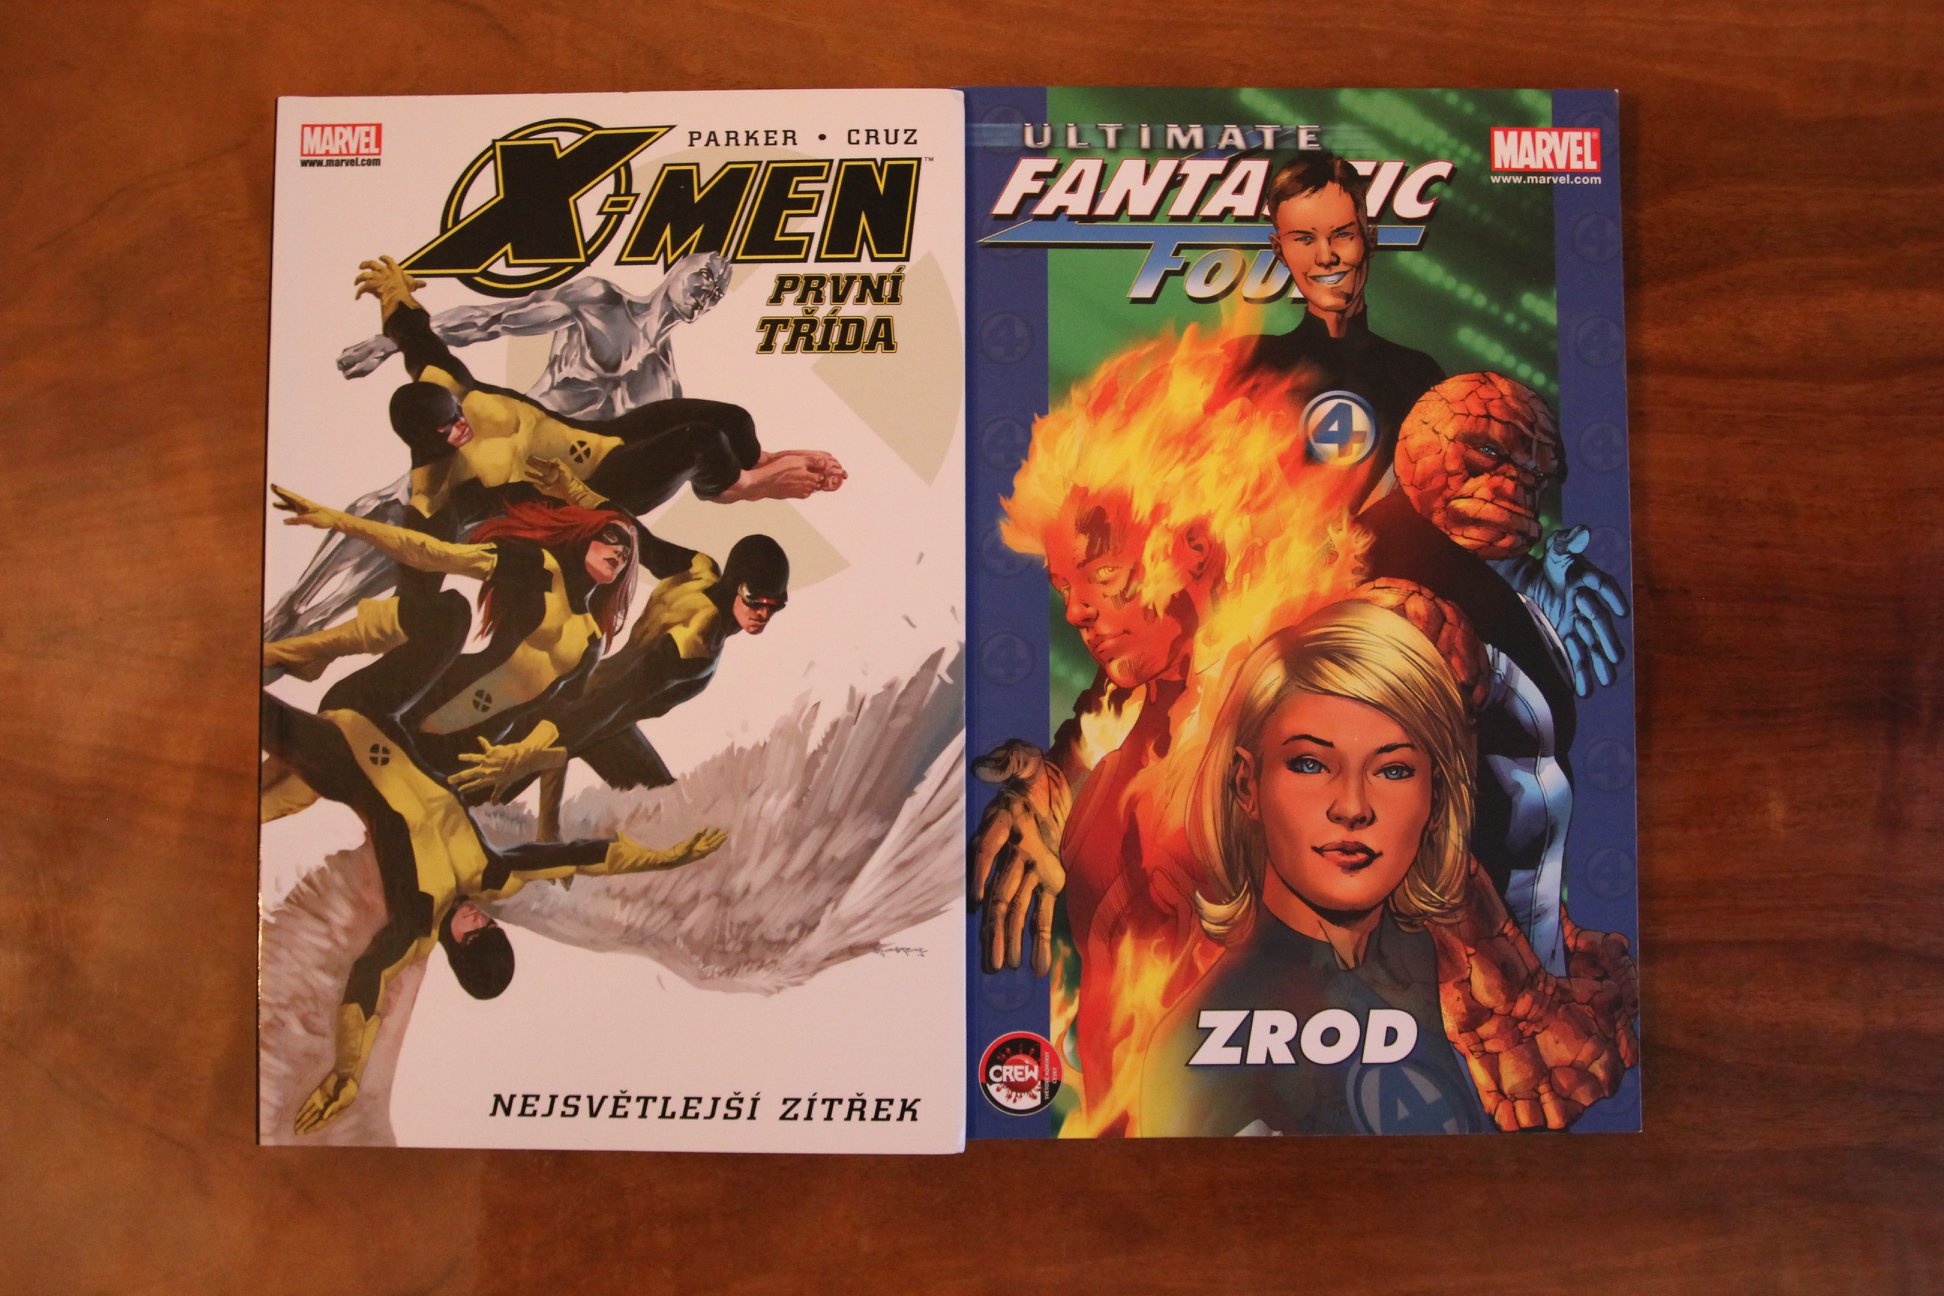 X-men: Nejsvětlejší zítřek + Fantastic Four: Zrod - Knihy a časopisy